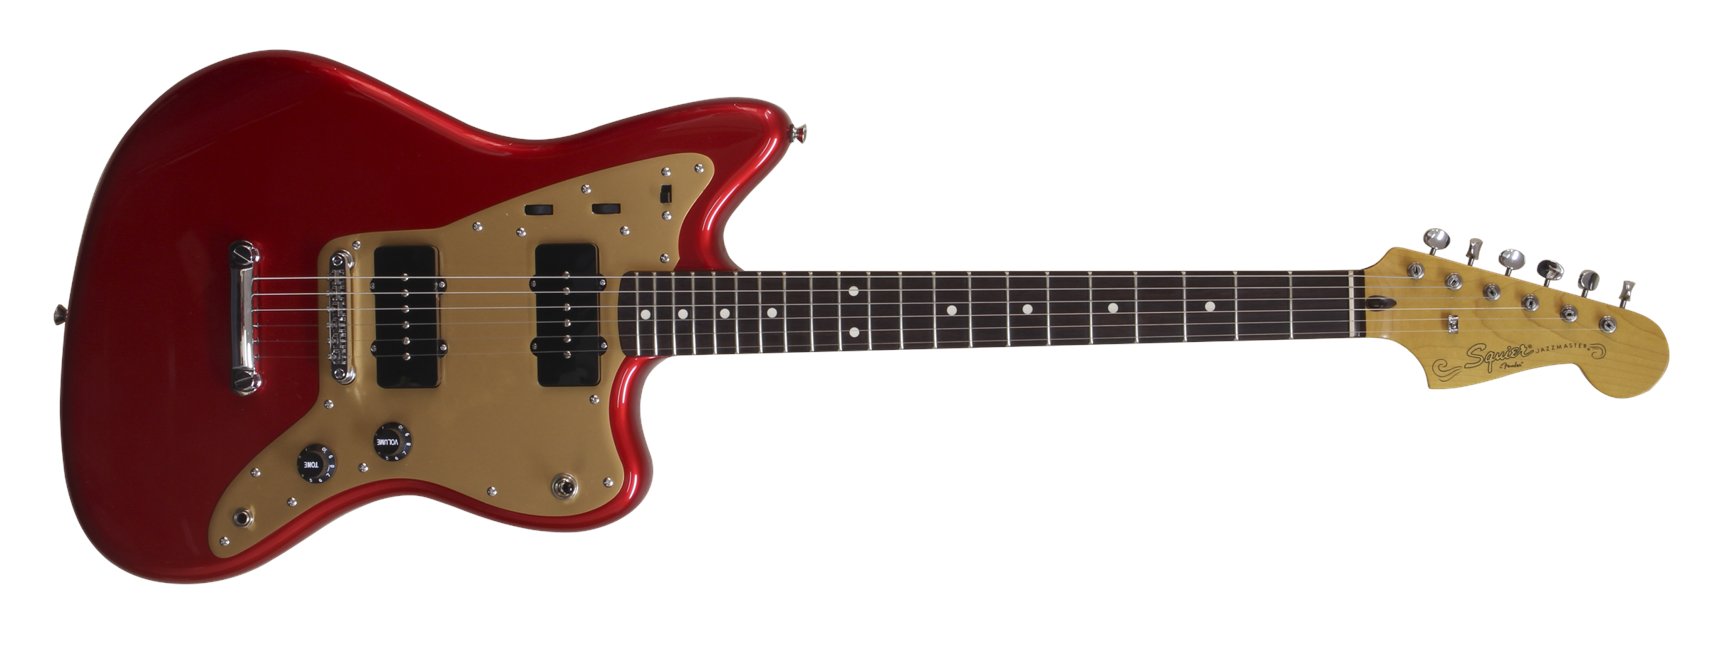 Fender Squier Deluxe Jazzmaster Elektrisk Guitar (Candy Apple Red)